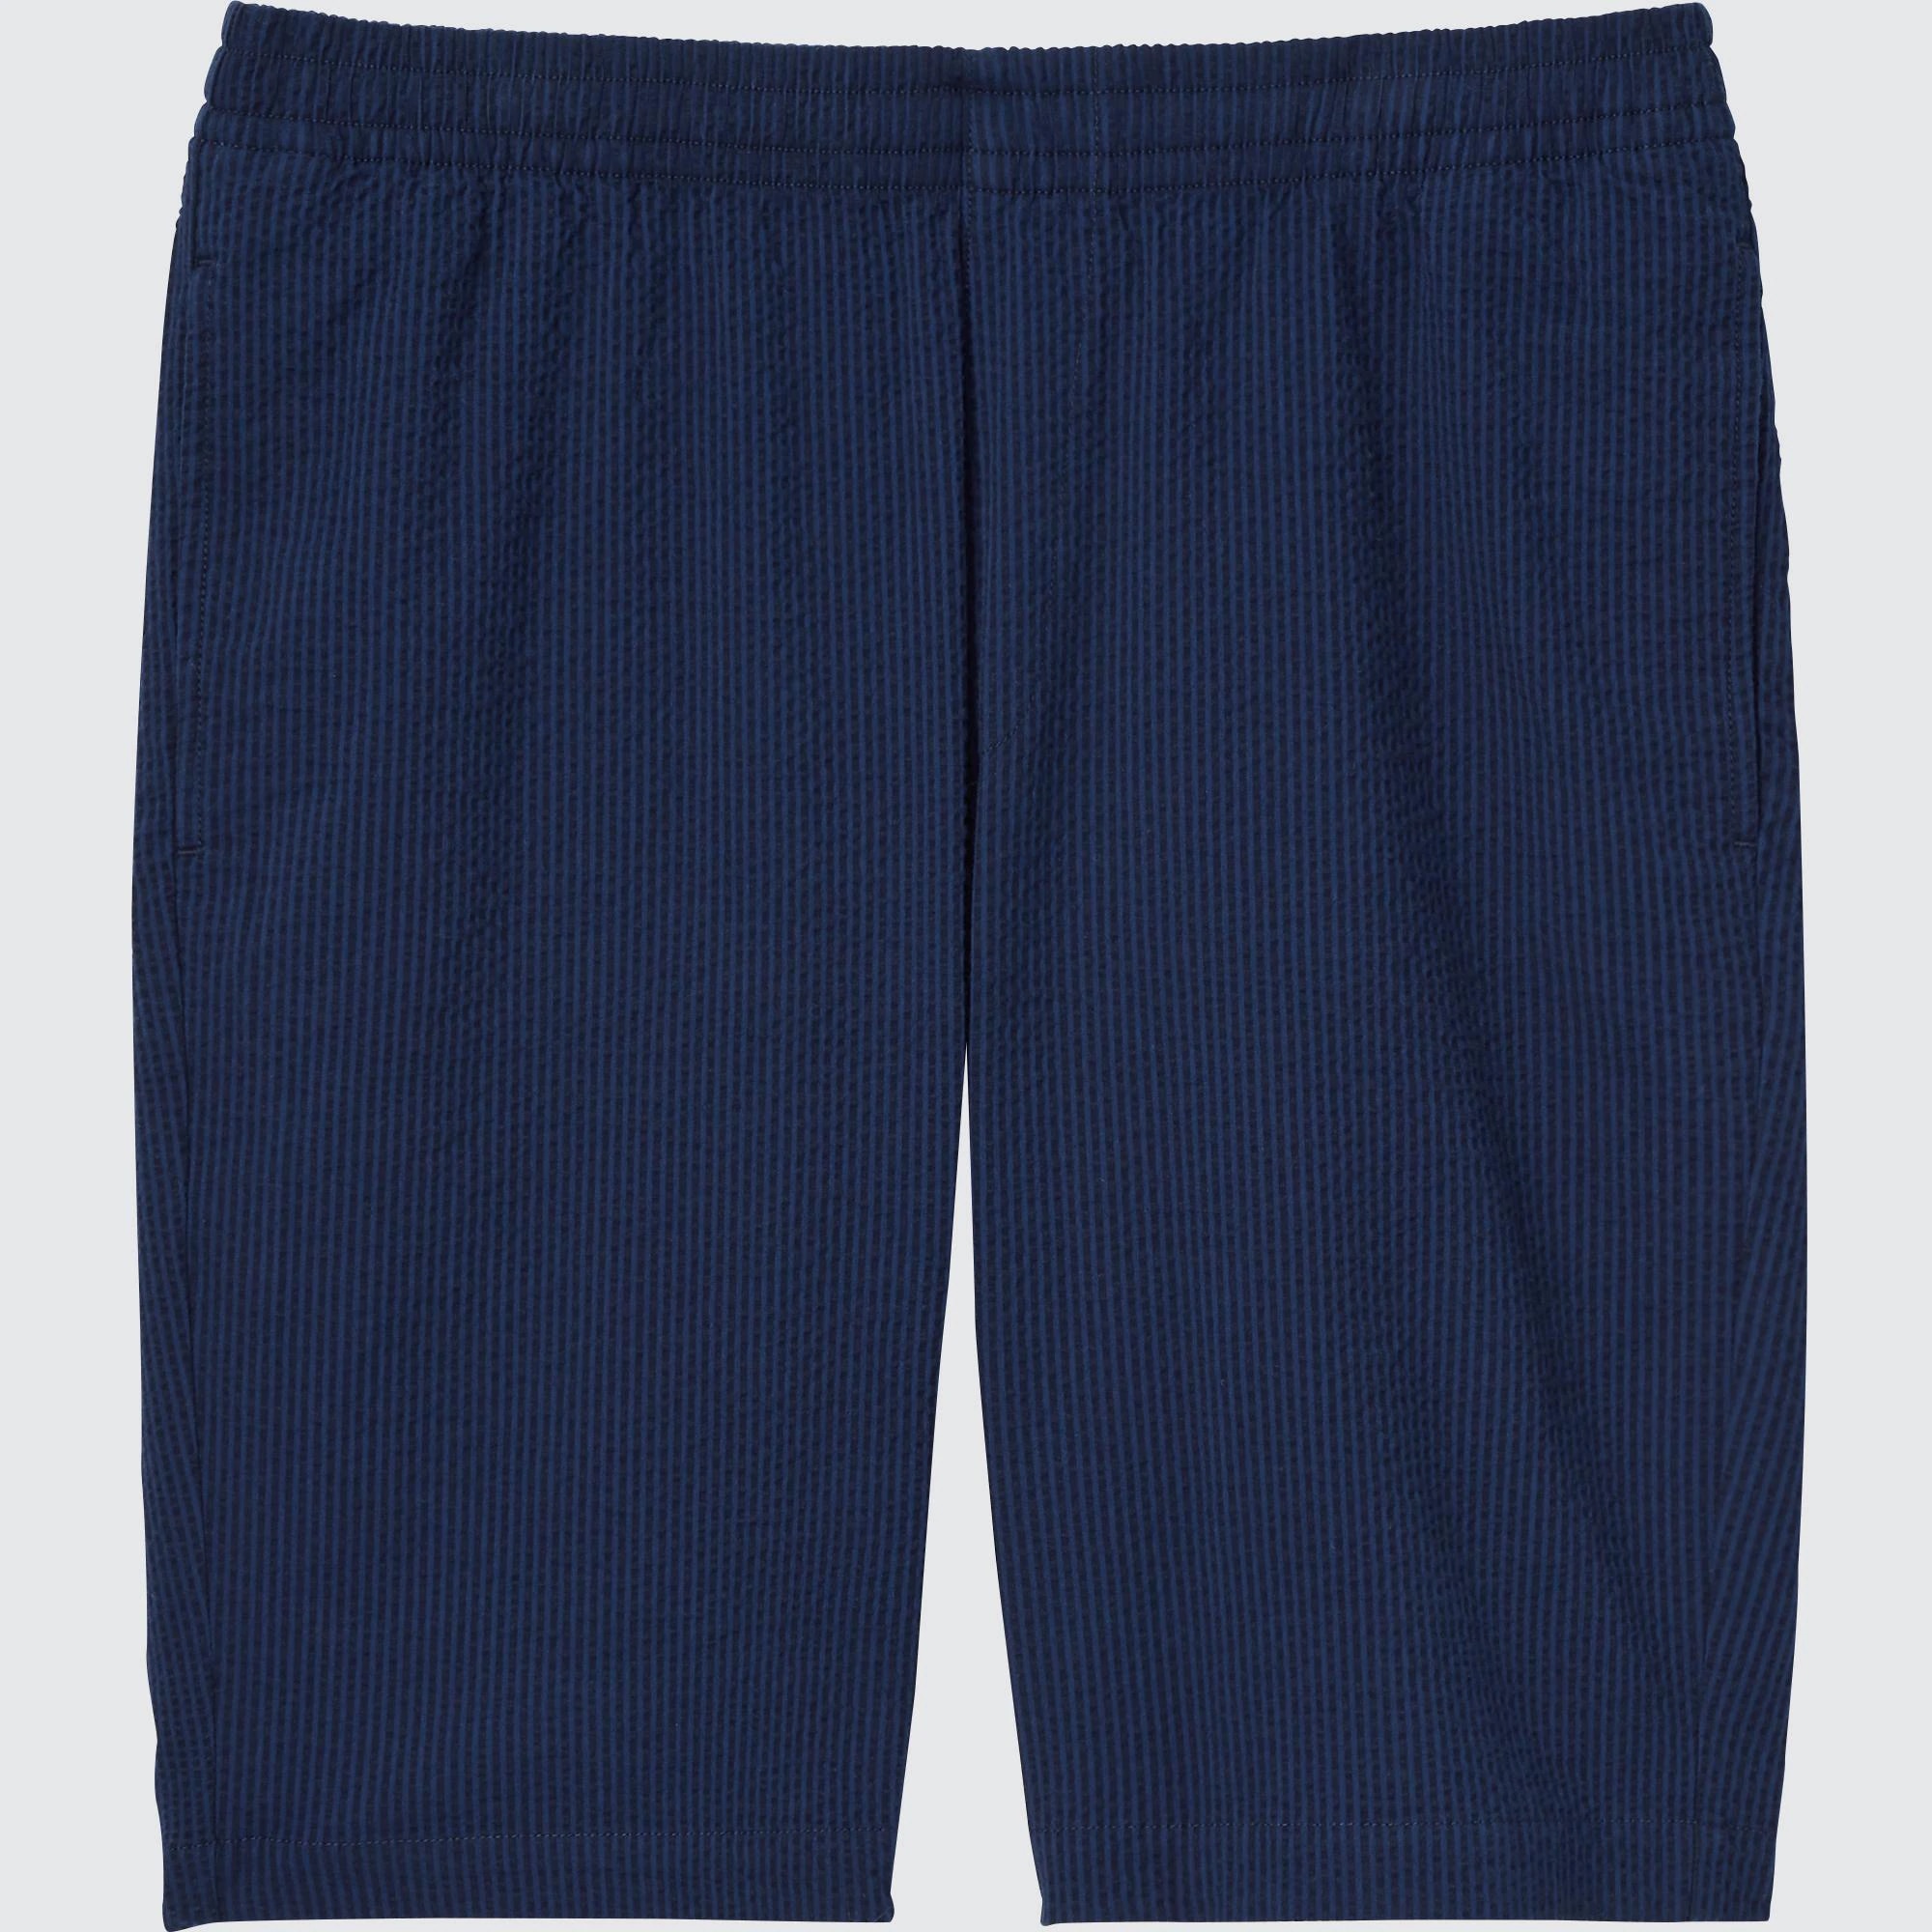 Poliéster Bermudas DRY-EX Estampado Uniqlo de hombre de color Azul Hombre Ropa de Pantalones cortos de Pantalones cortos informales 